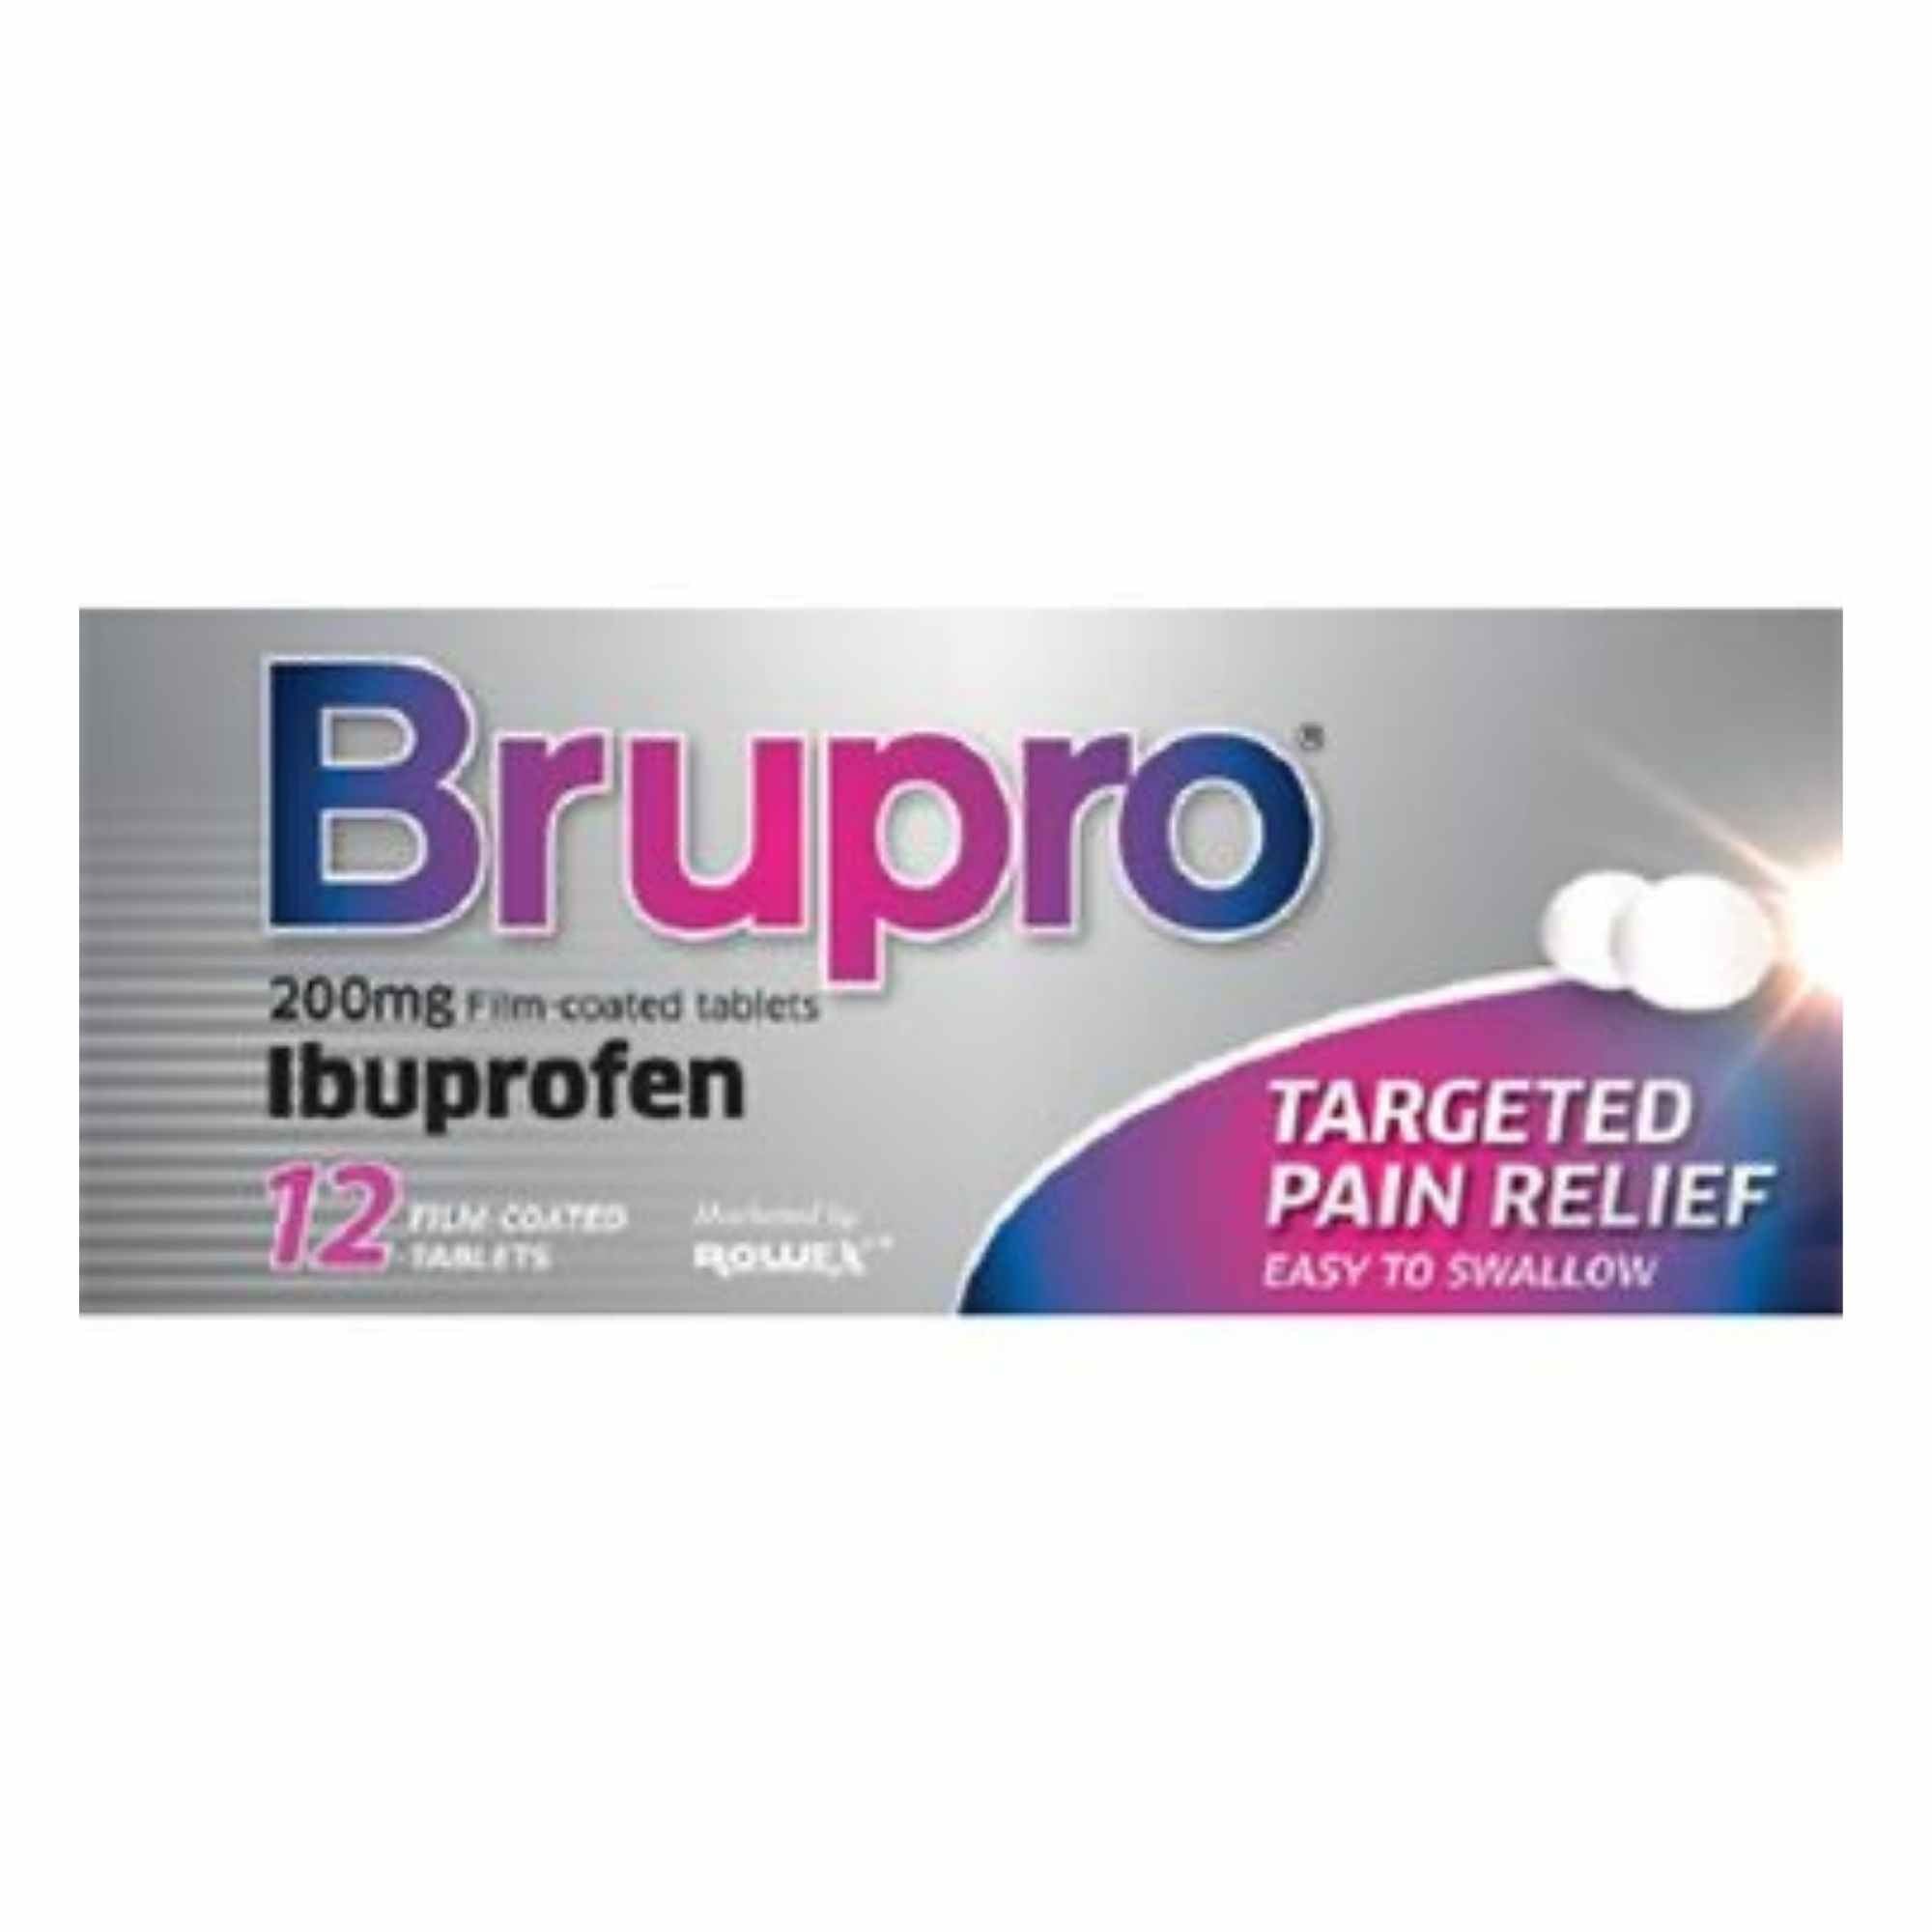 Perrigo Brupro Ibuprofen 200mg Tablets - 12 Pack